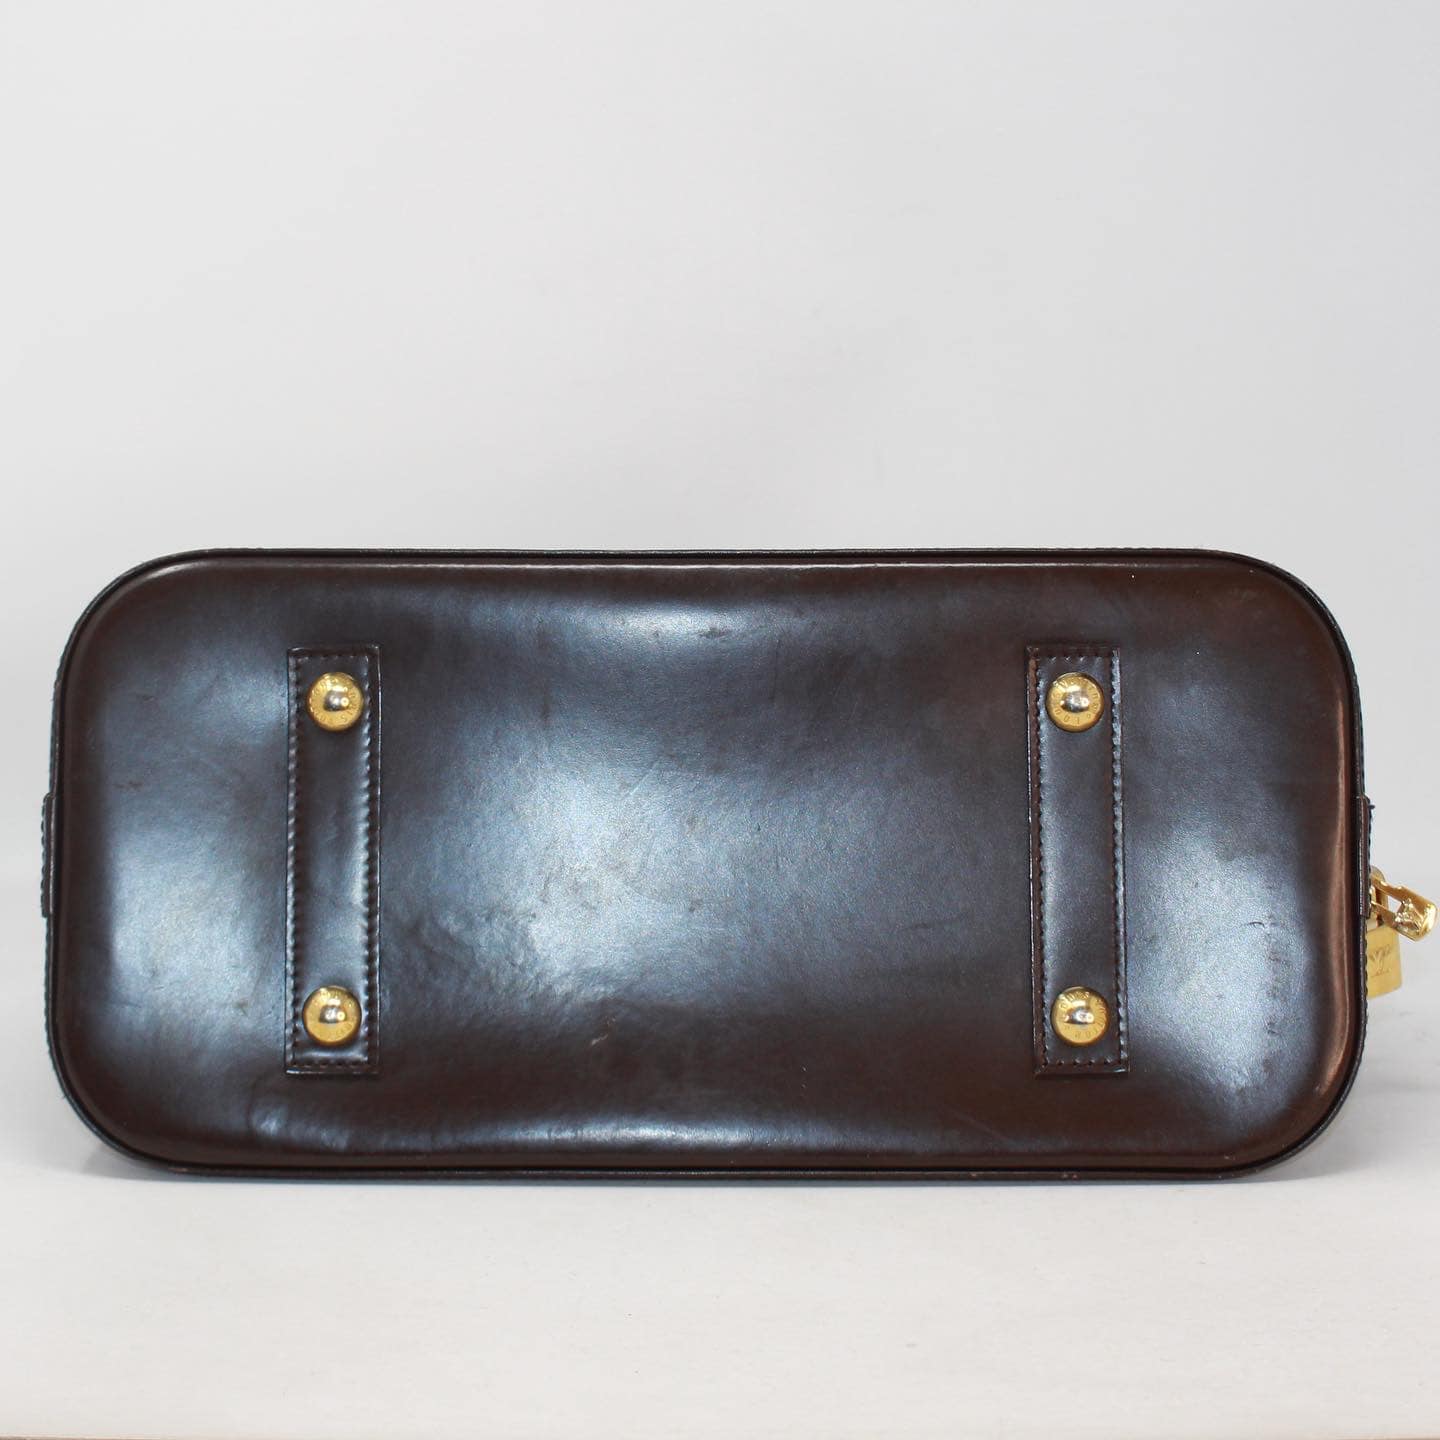 Louis Vuitton Alma PM Satchel Bag Vintage